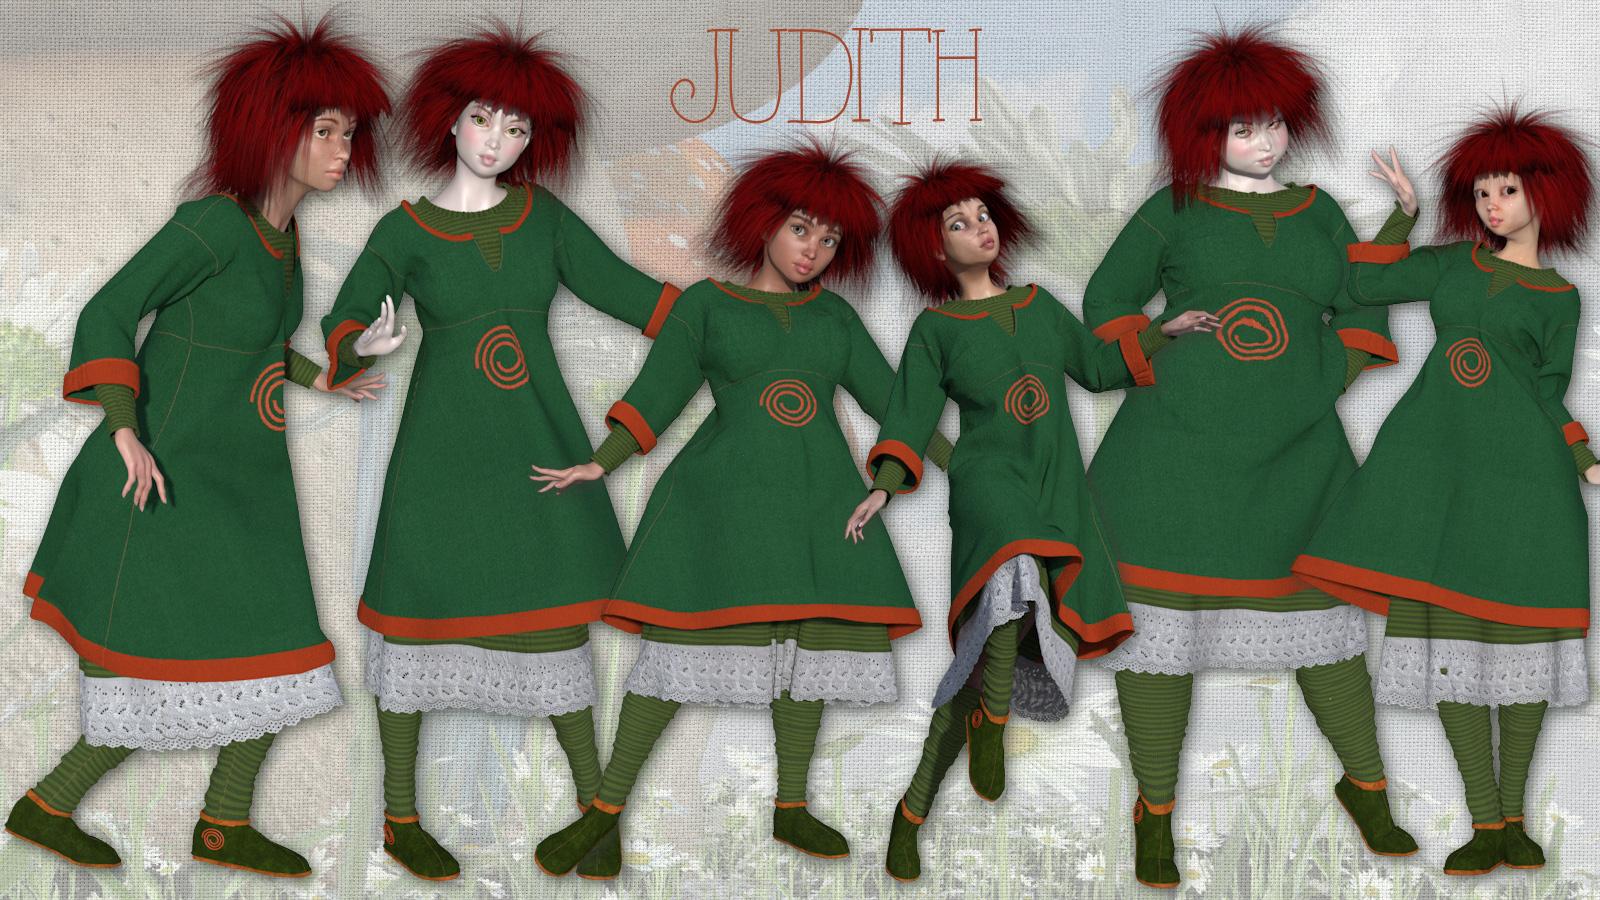 Judithpromo1600x900